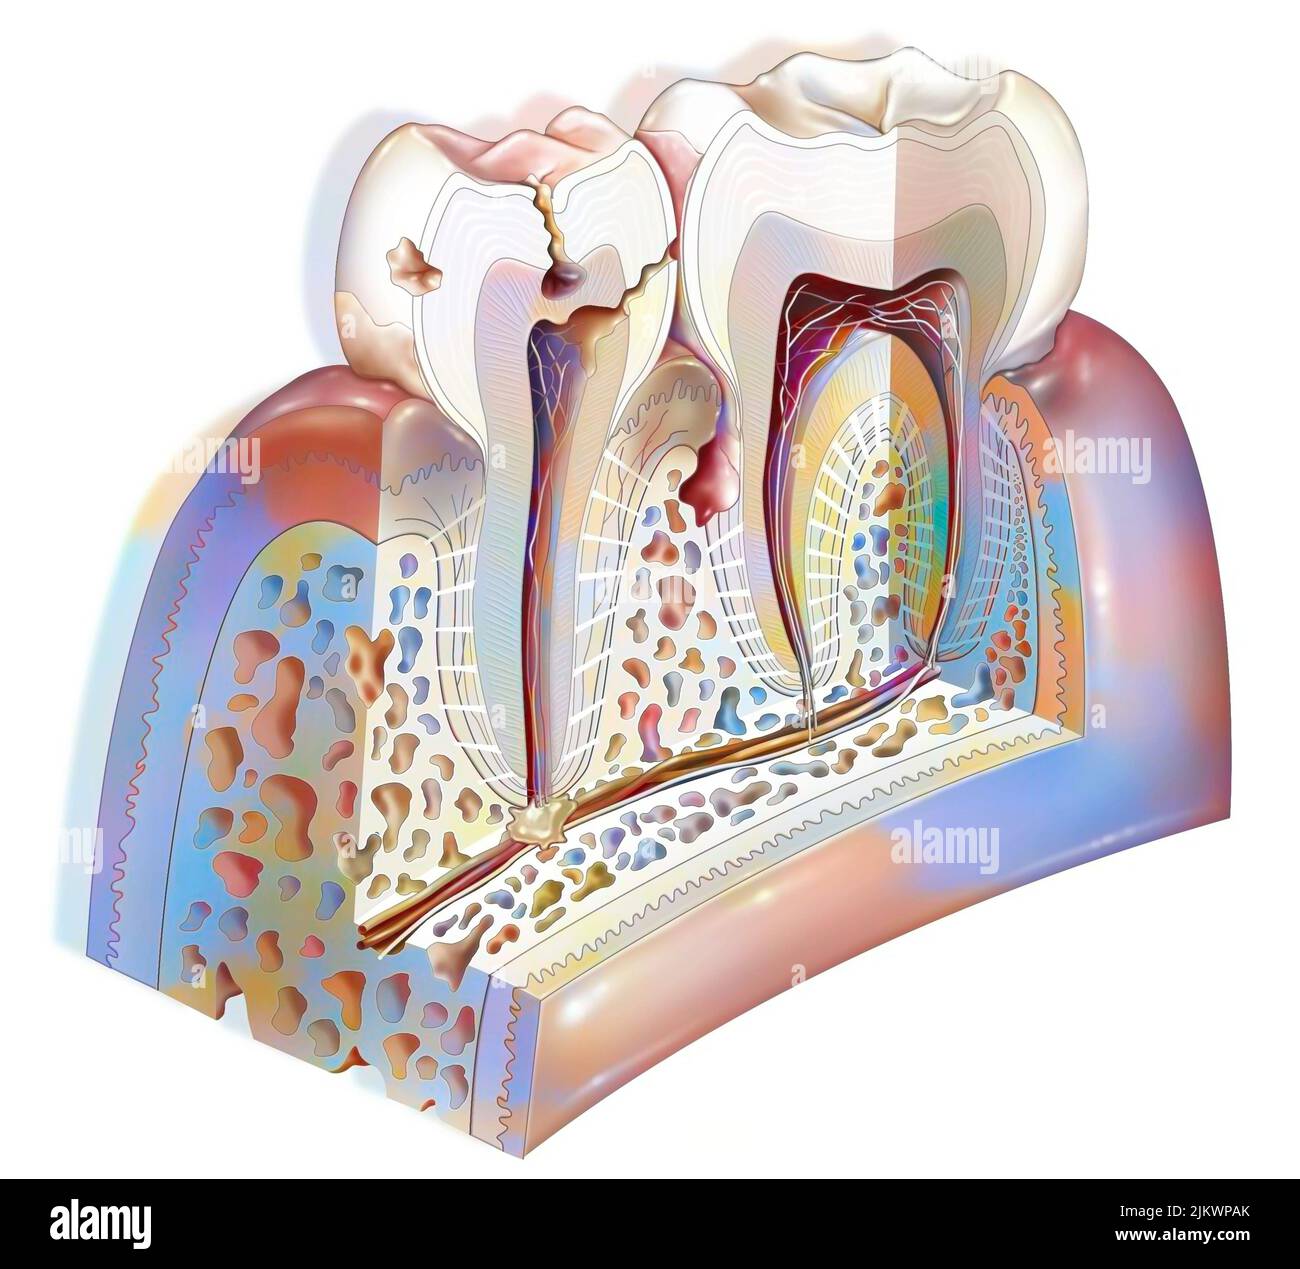 Placa dental: Principales patologías de los dientes: Sarro, gingivitis, caries. Foto de stock